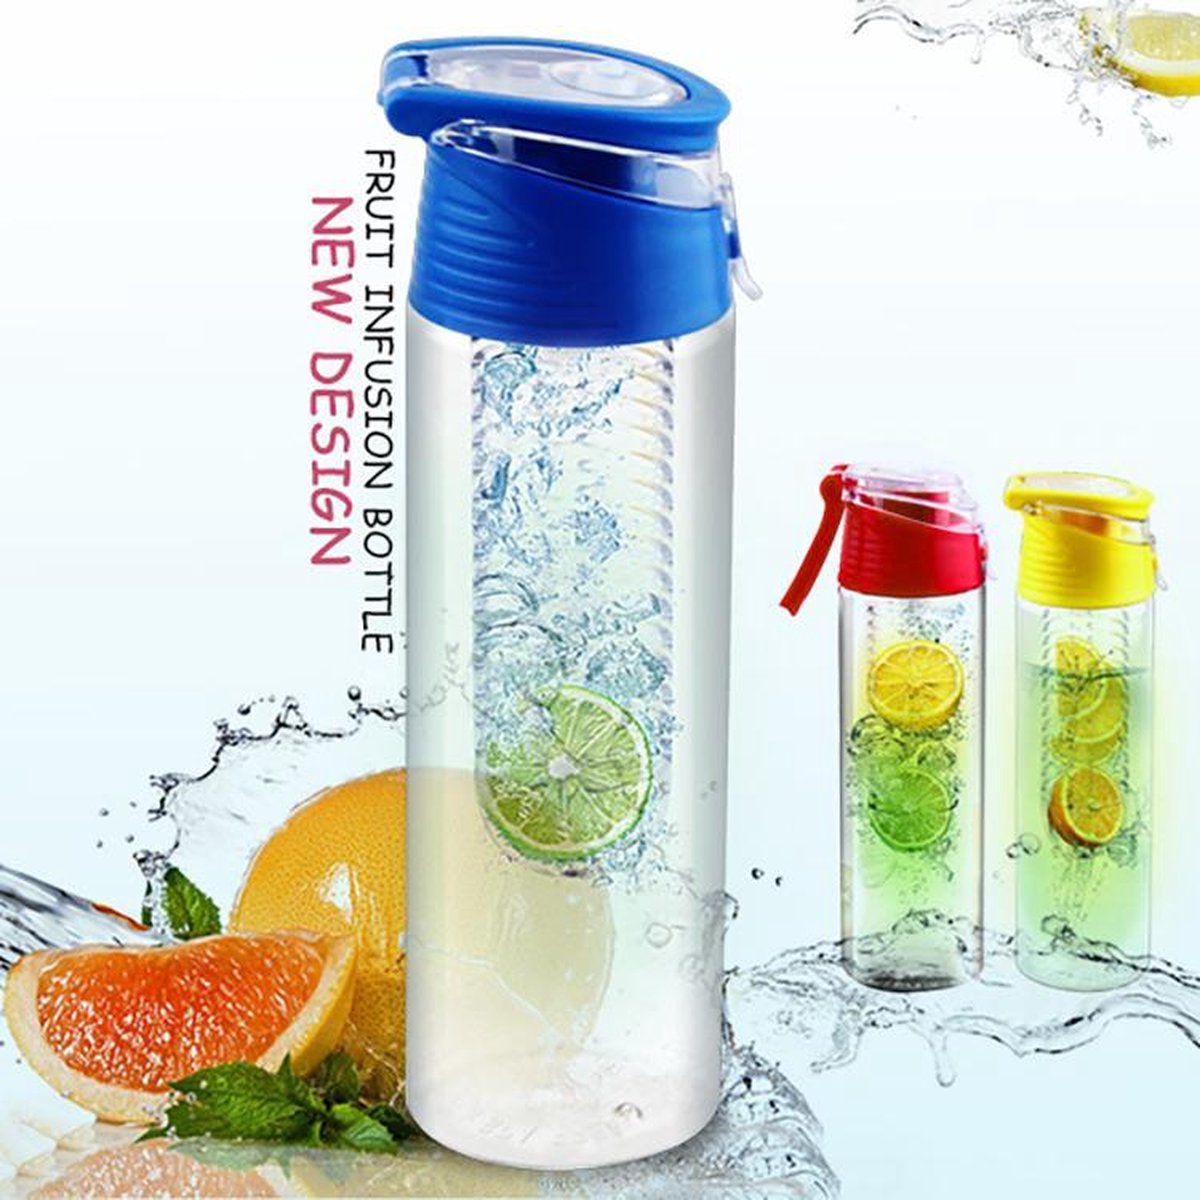 FIGURETTA waterfles met infuser | inhoud 0.7 ltr | BPA-vrij |blauw